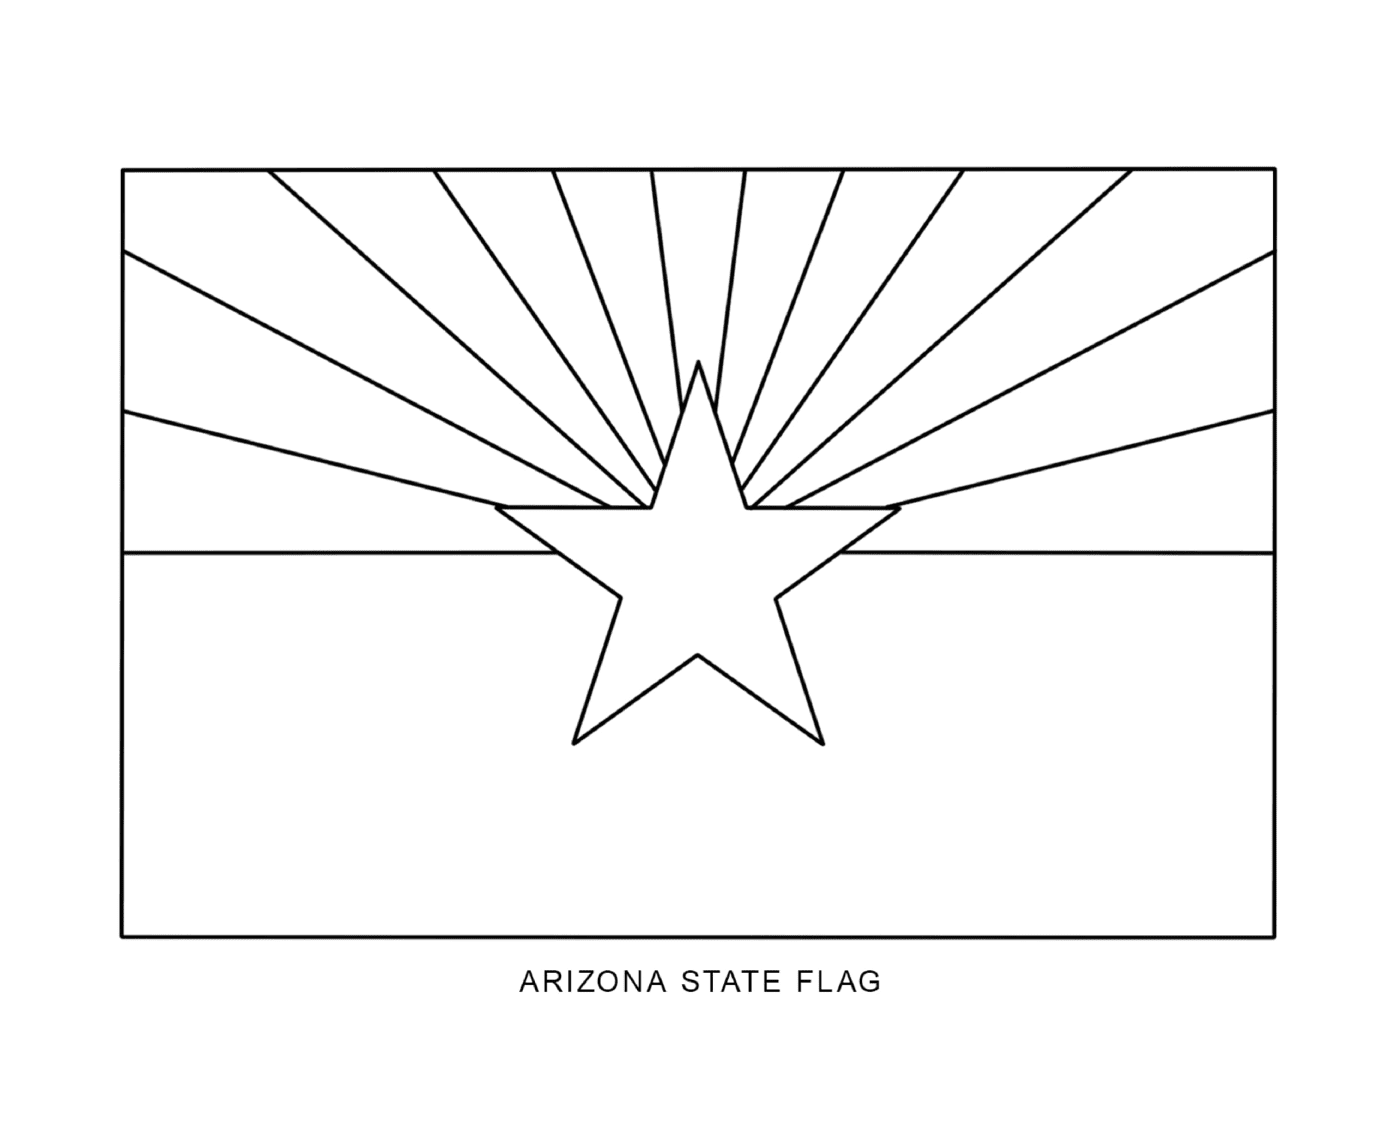  悬挂亚利亚州国旗的亚利桑那州 